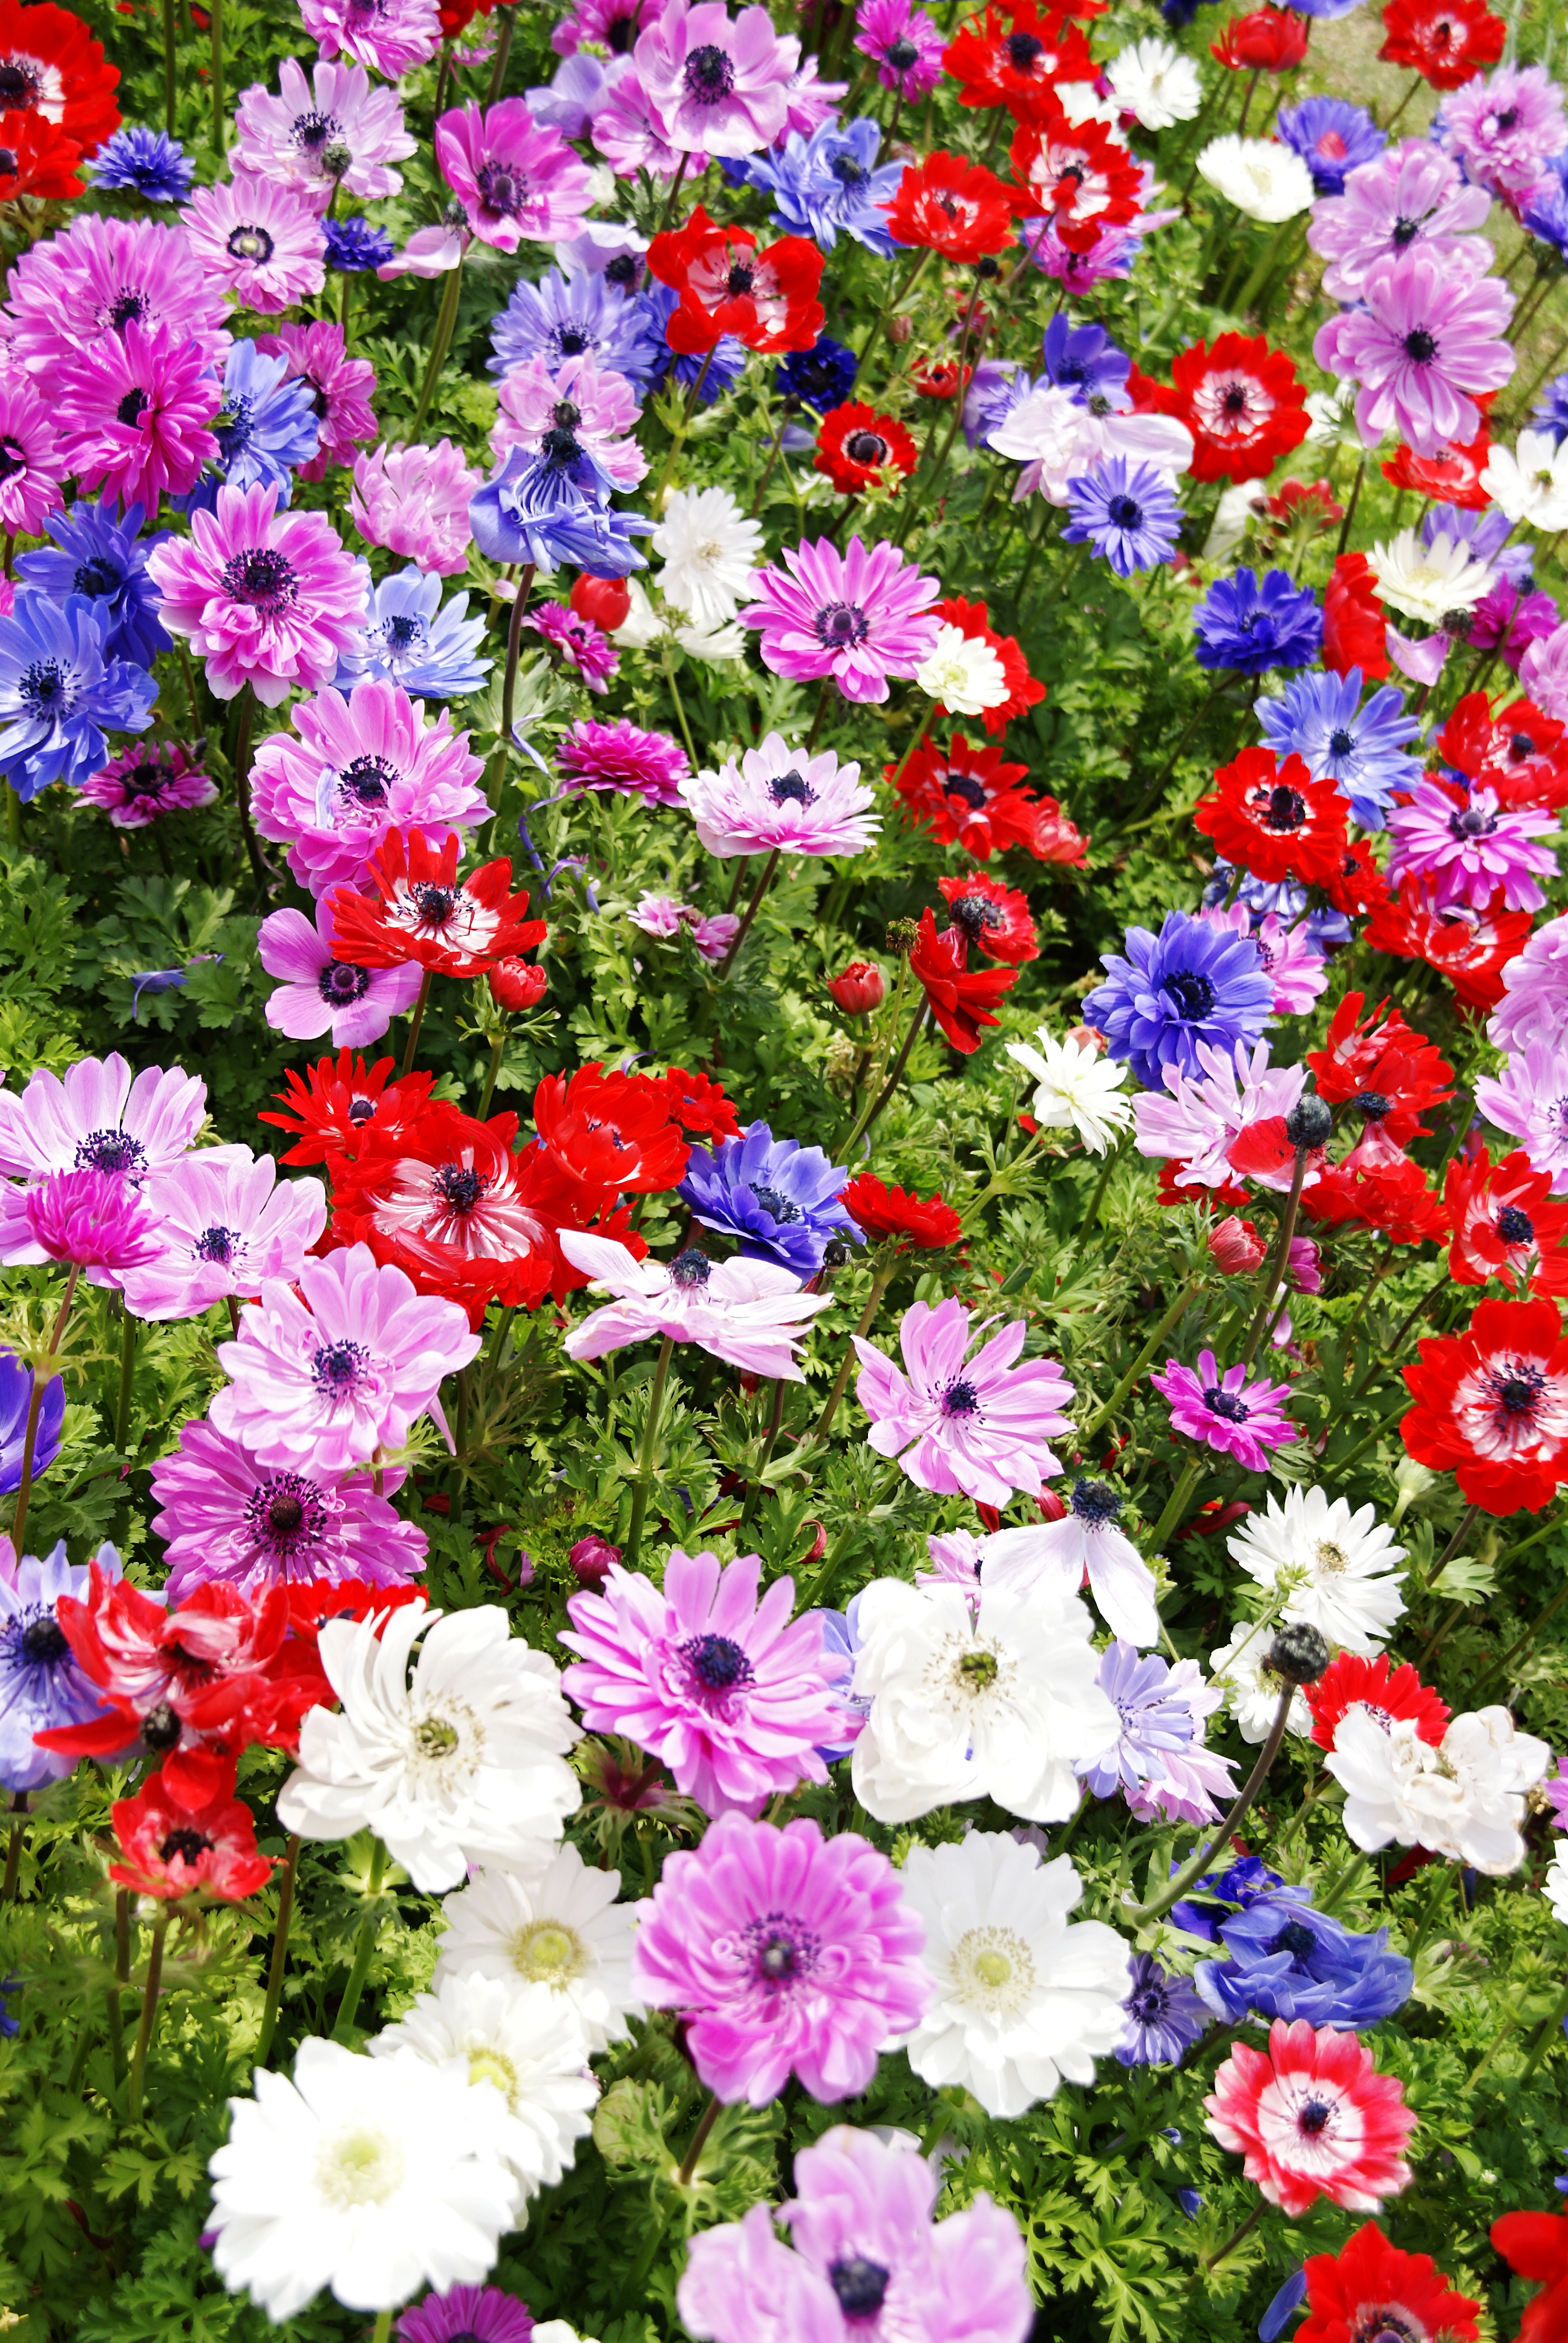 Mixed flowers at Akashi Kaikyo National Government Park